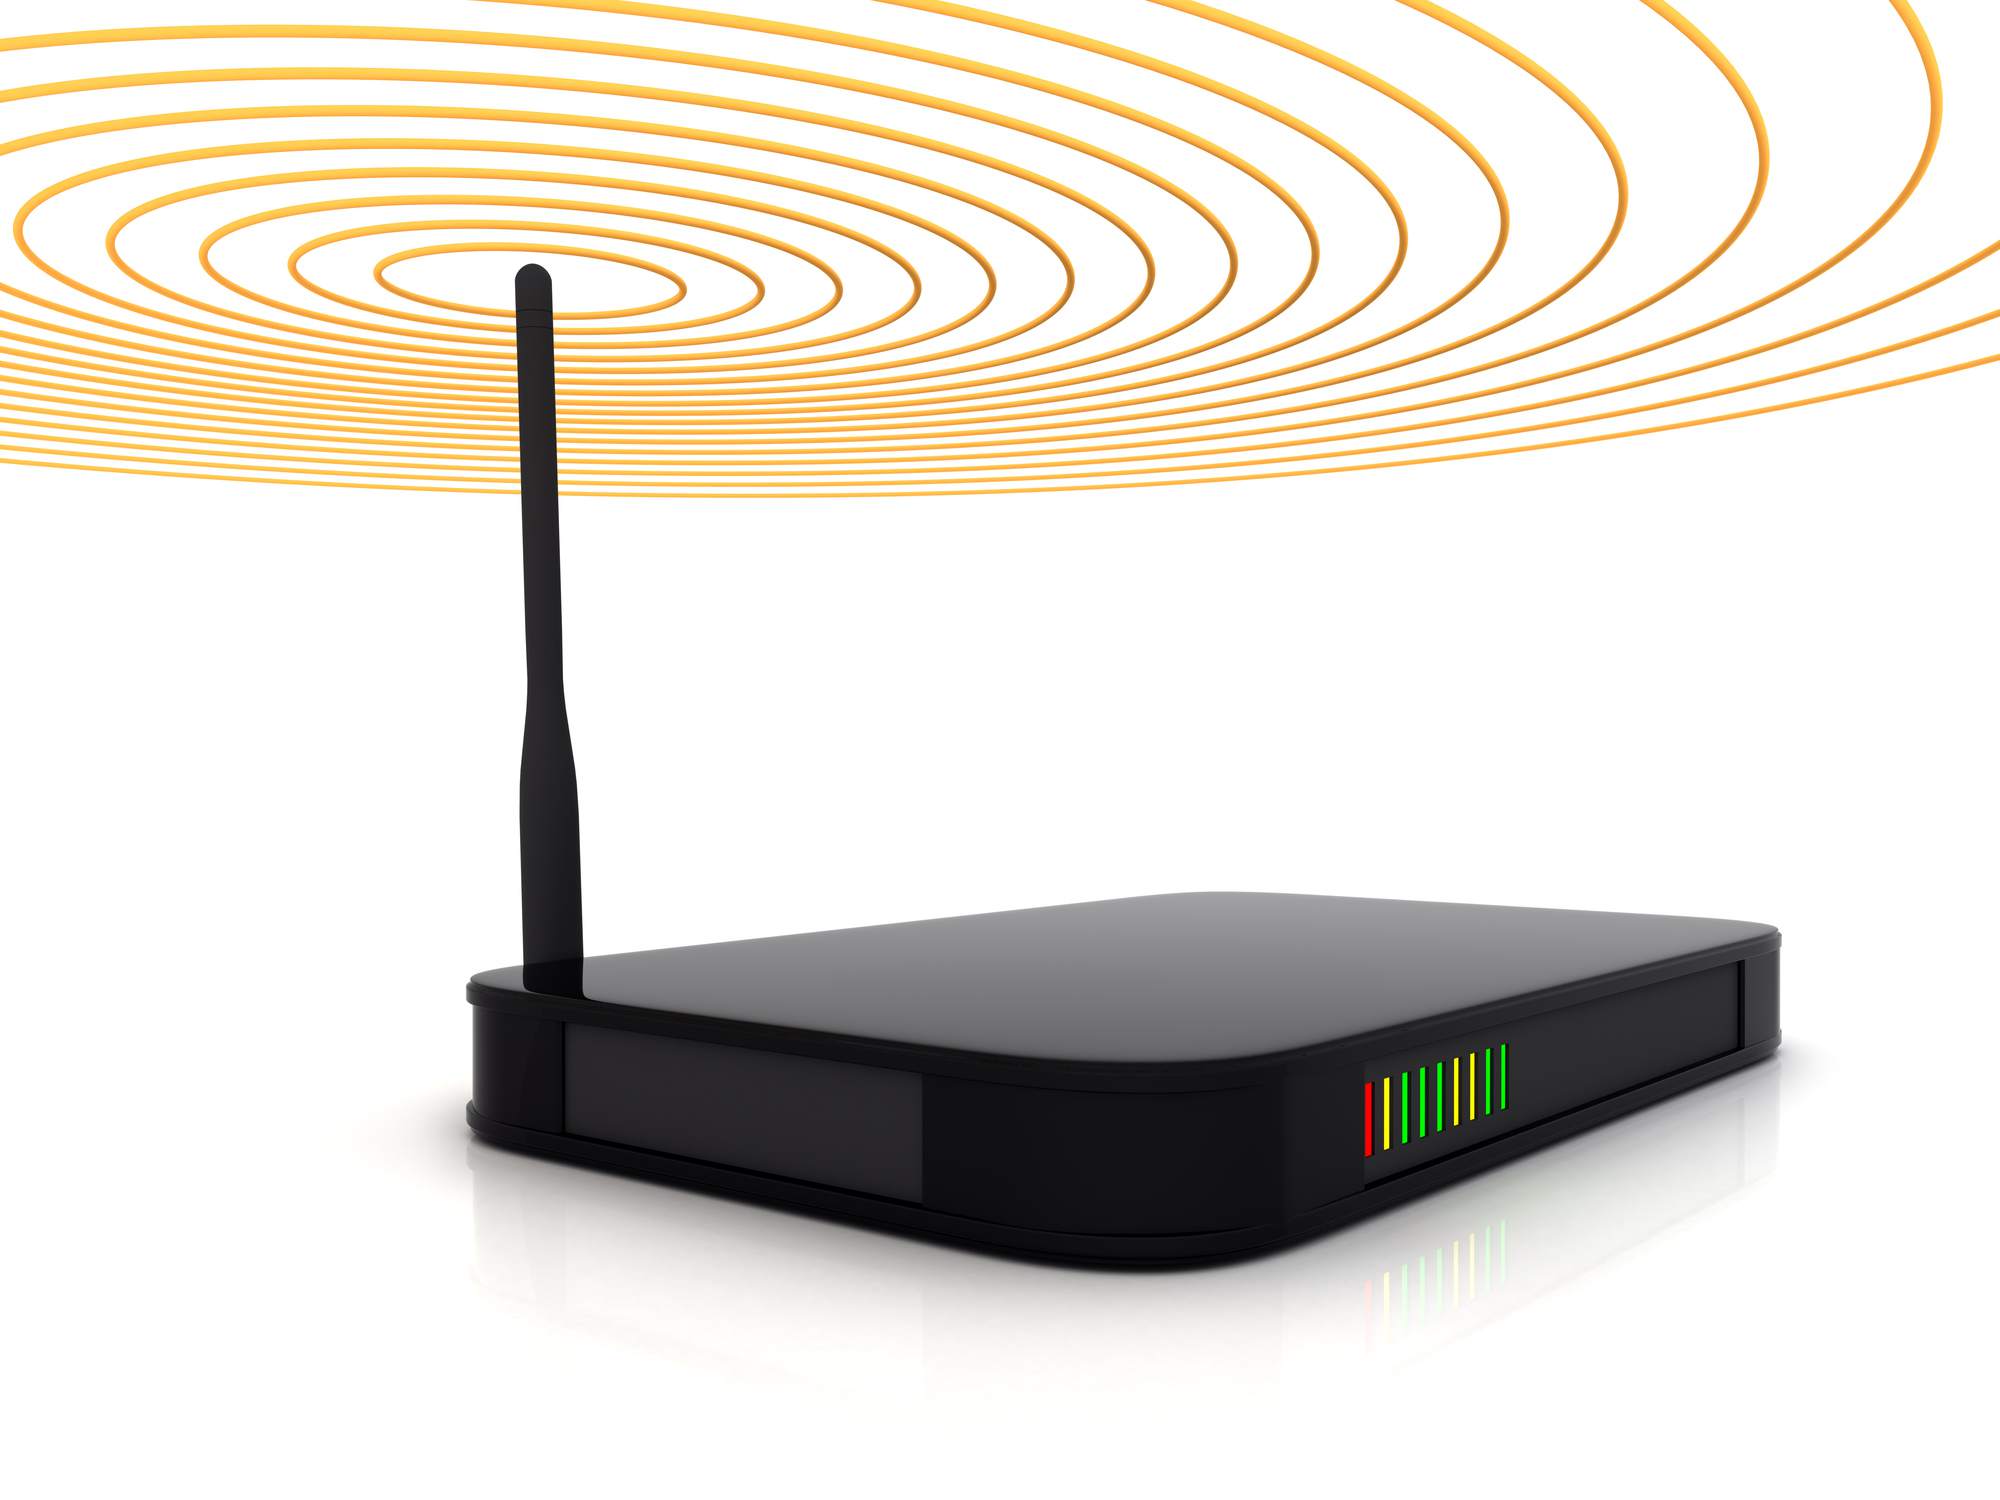 Bezdrátový router zobrazující signální paprsky